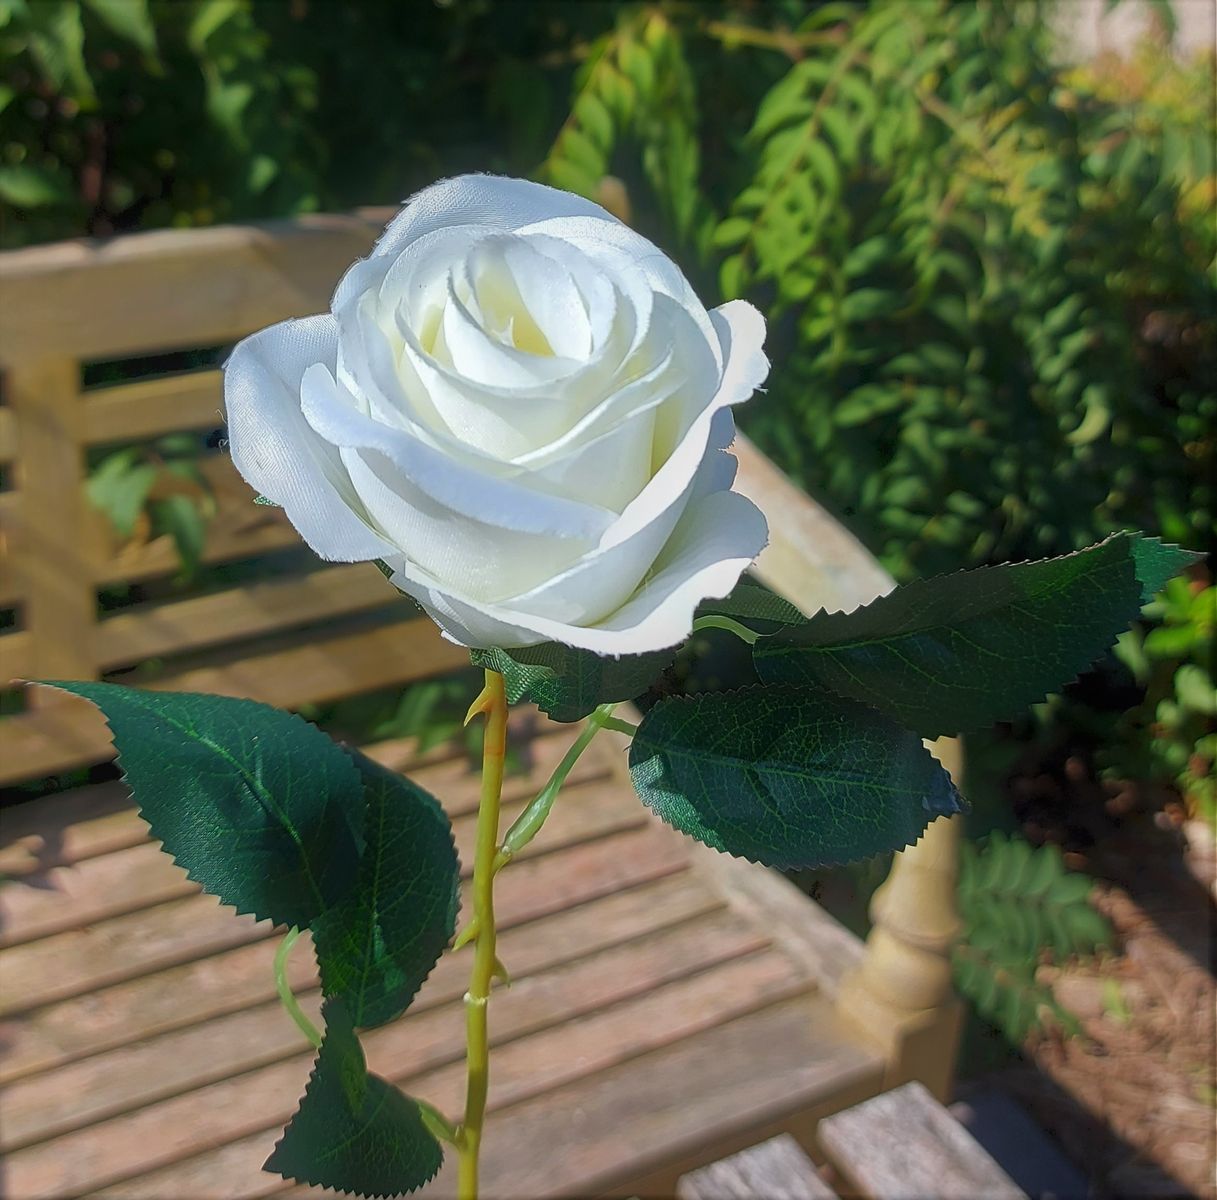 Unechte Rose, 55 cm, Ø 7 cm, creme-weiß